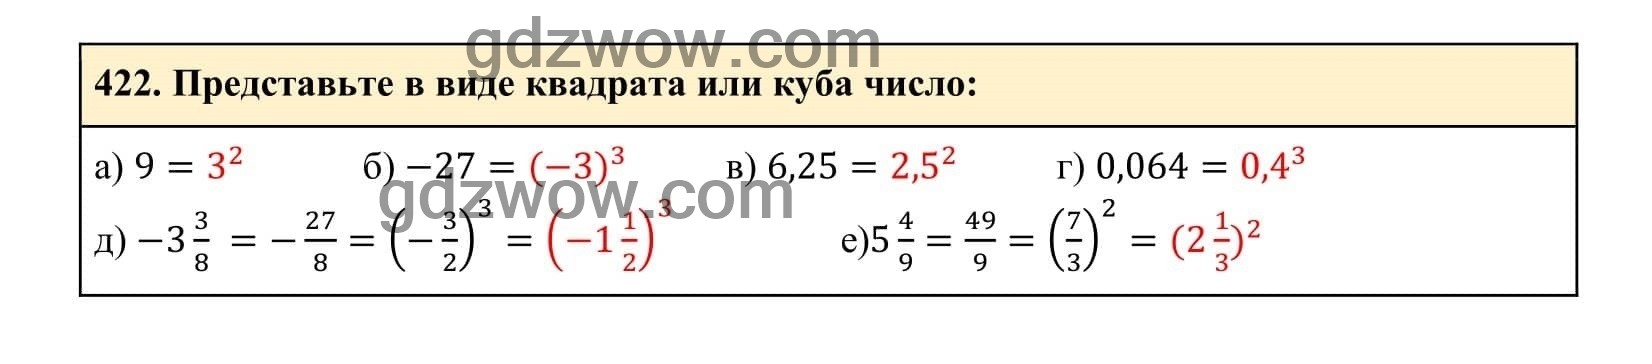 Упражнение 422 - ГДЗ по Алгебре 7 класс Учебник Макарычев (решебник) - GDZwow